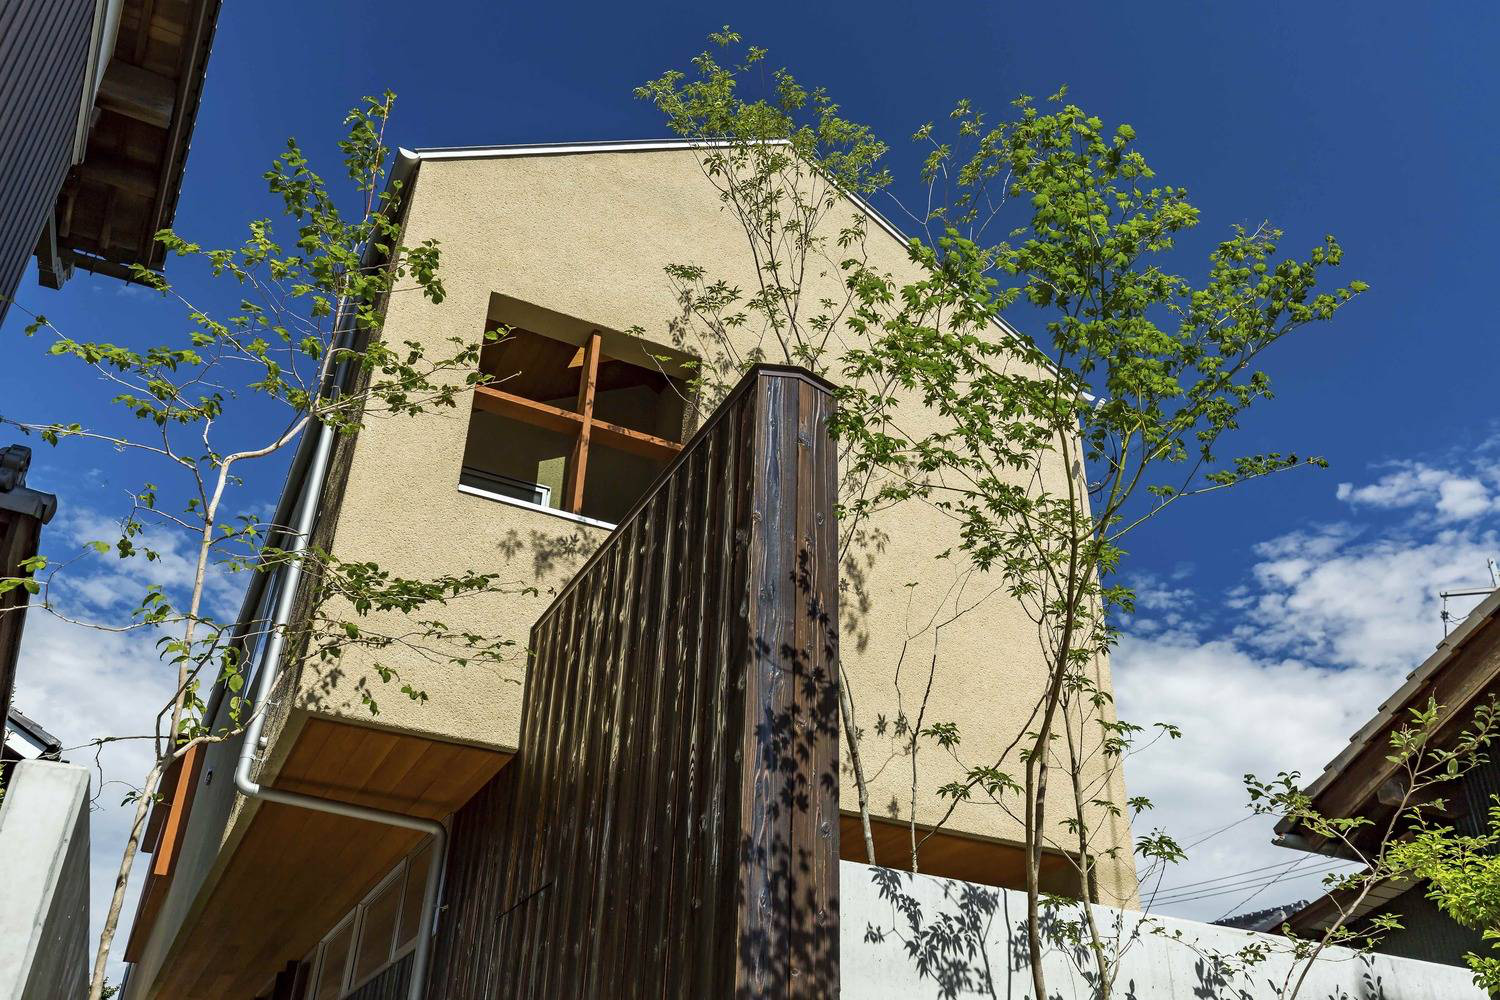 Hình ảnh cận cảnh vẻ ngoài ngôi nhà phố phong cách Nhật đơn giản với tường xi măng, khung cửa sổ gỗ, tường bao